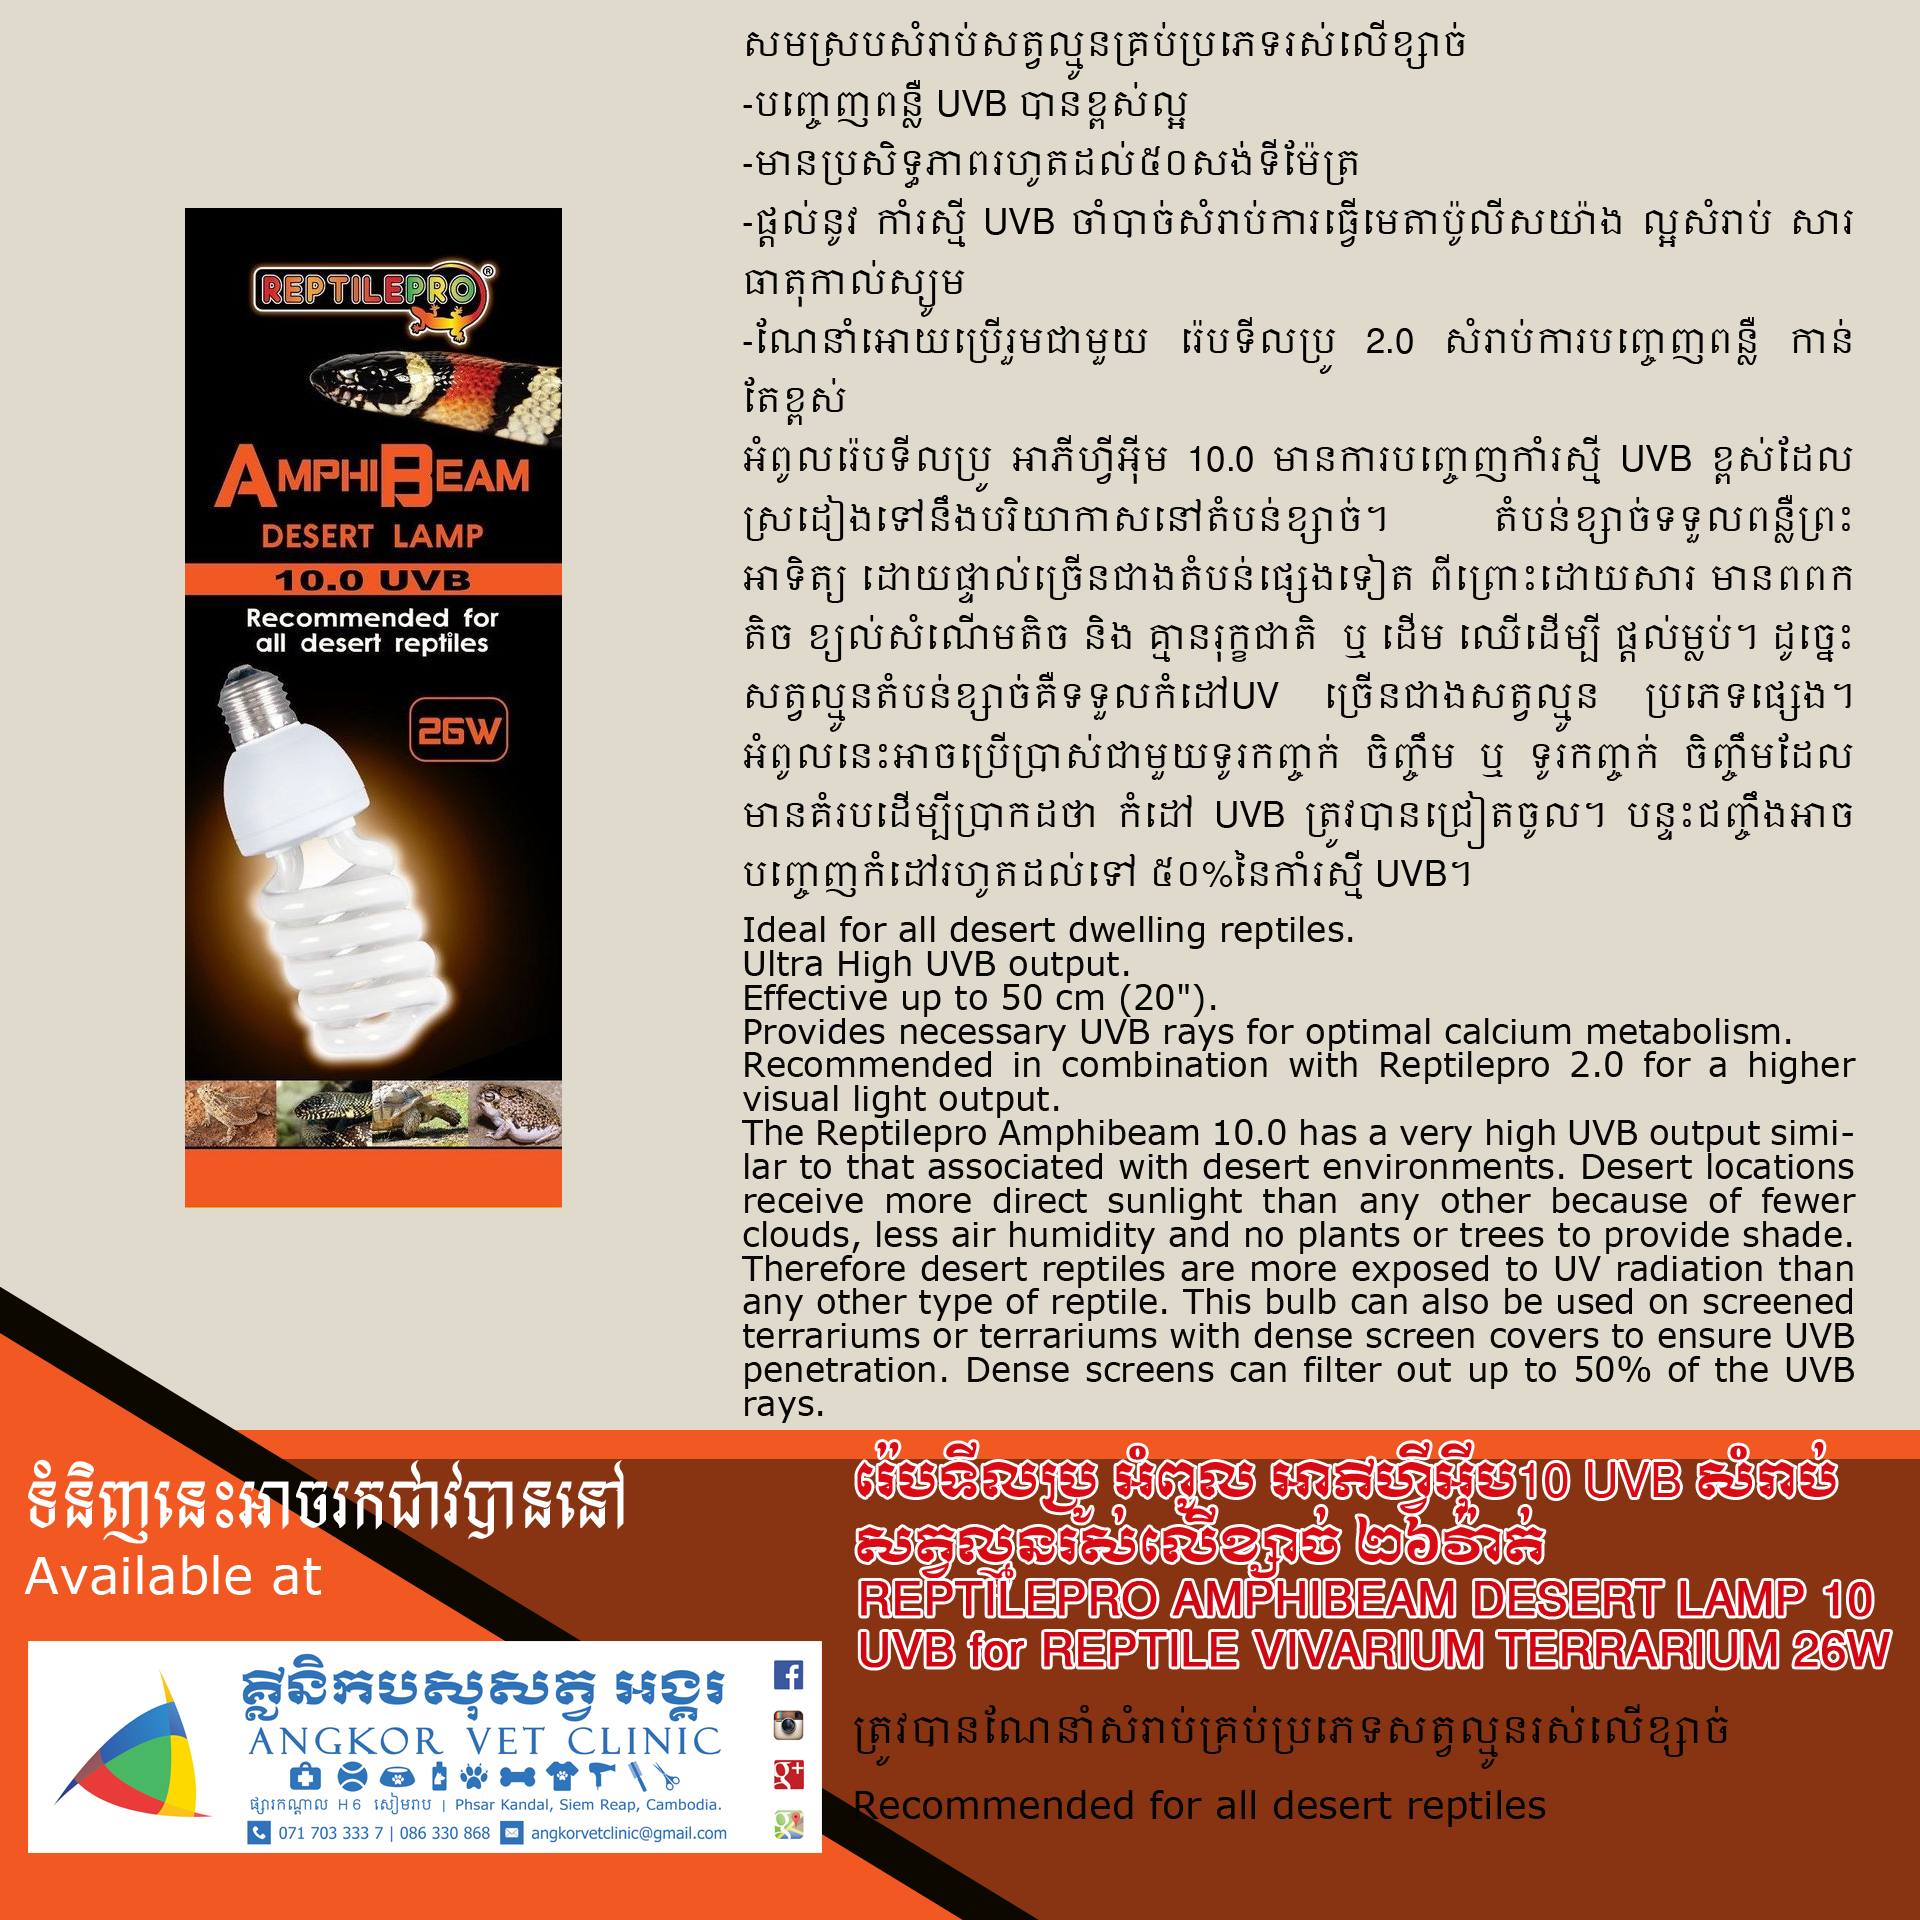 REPTILEPRO AMPHIBEAM SOLAR DESERT LAMP for REPTILE VIVARIUM TERRARIUM 26W 